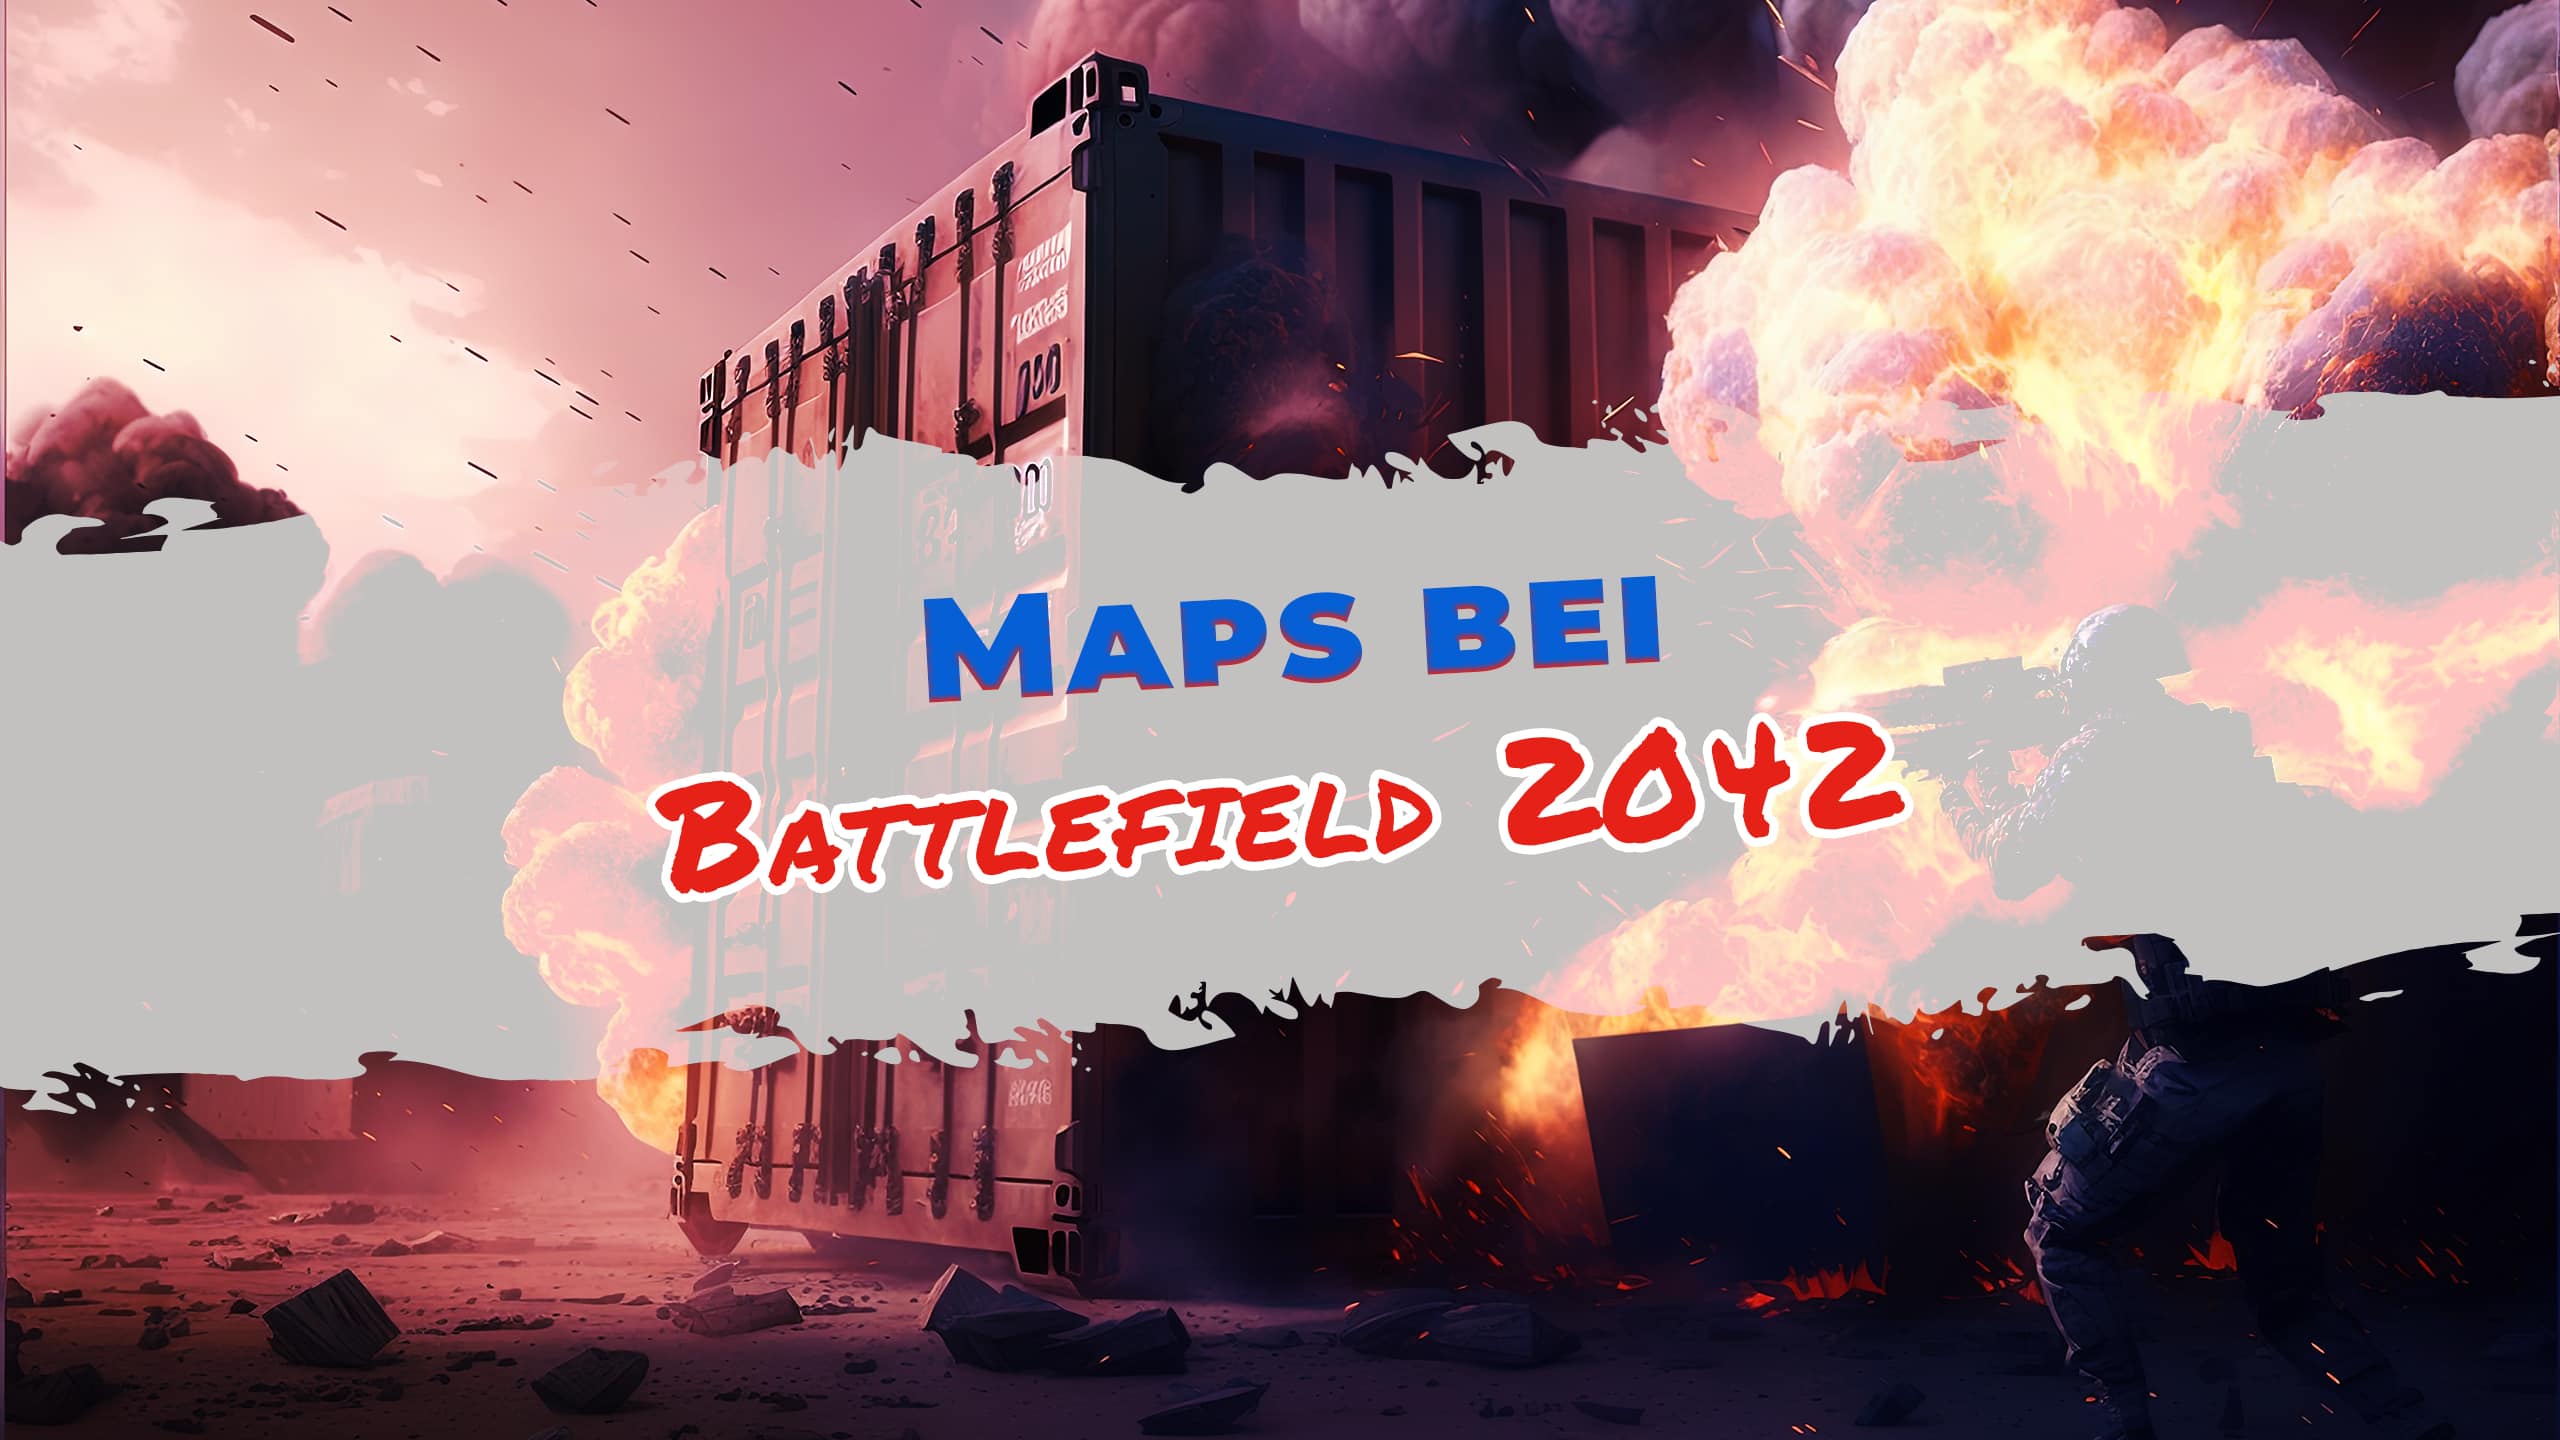 Wie viele Maps hat Battlefield 2042?